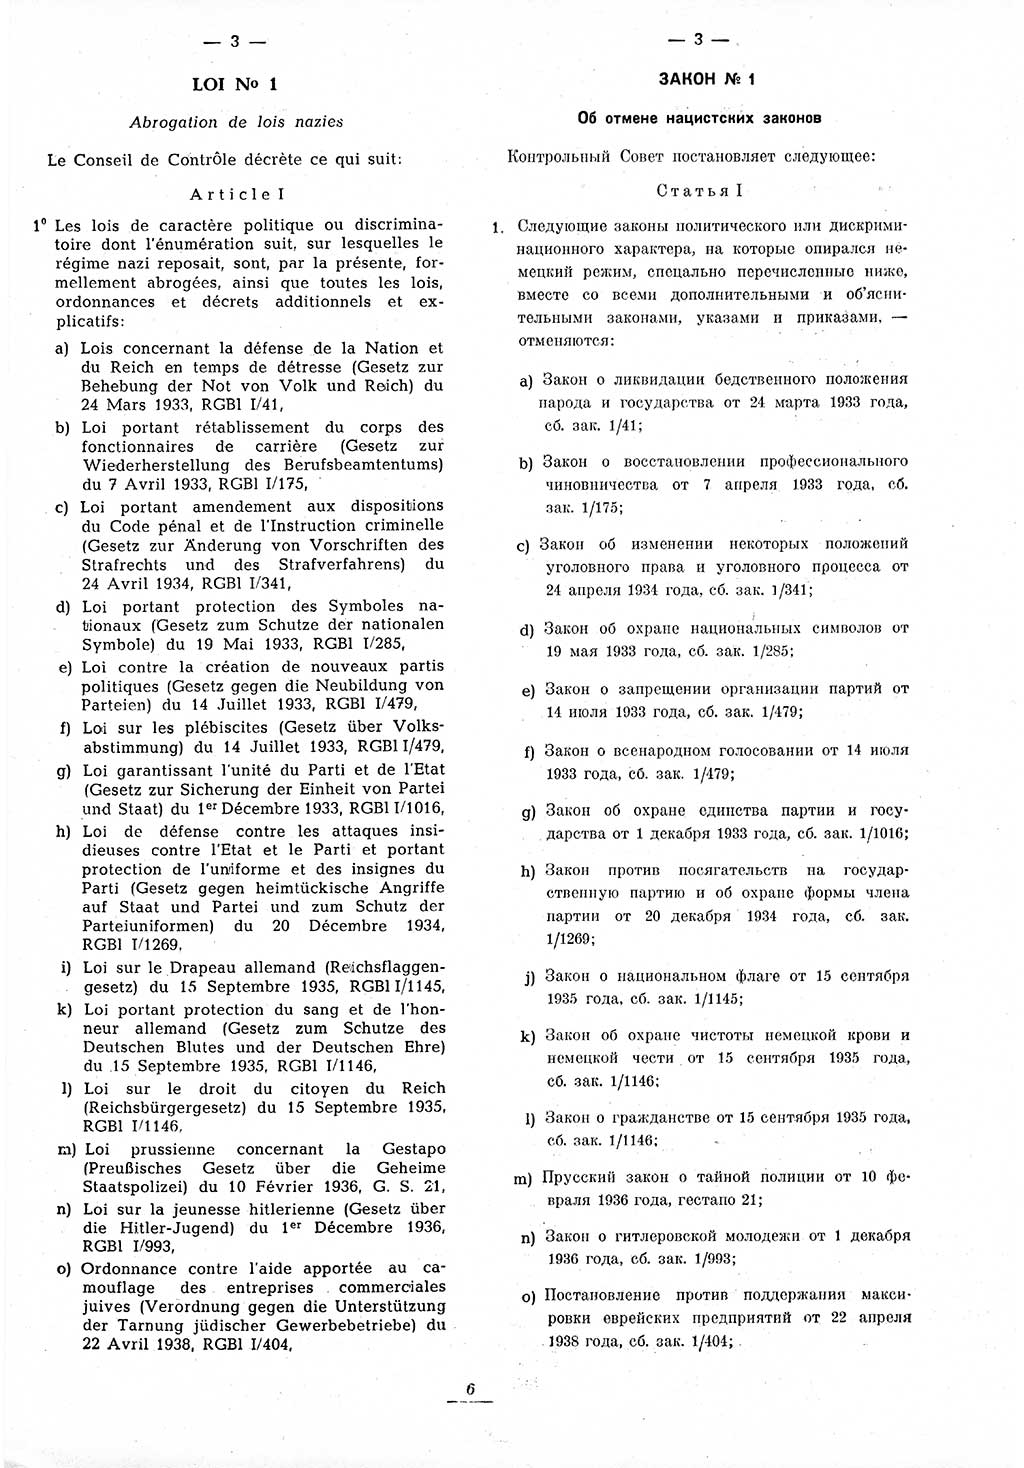 Amtsblatt des Kontrollrats (ABlKR) in Deutschland 1945, Seite 6/1 (ABlKR Dtl. 1945, S. 6/1)